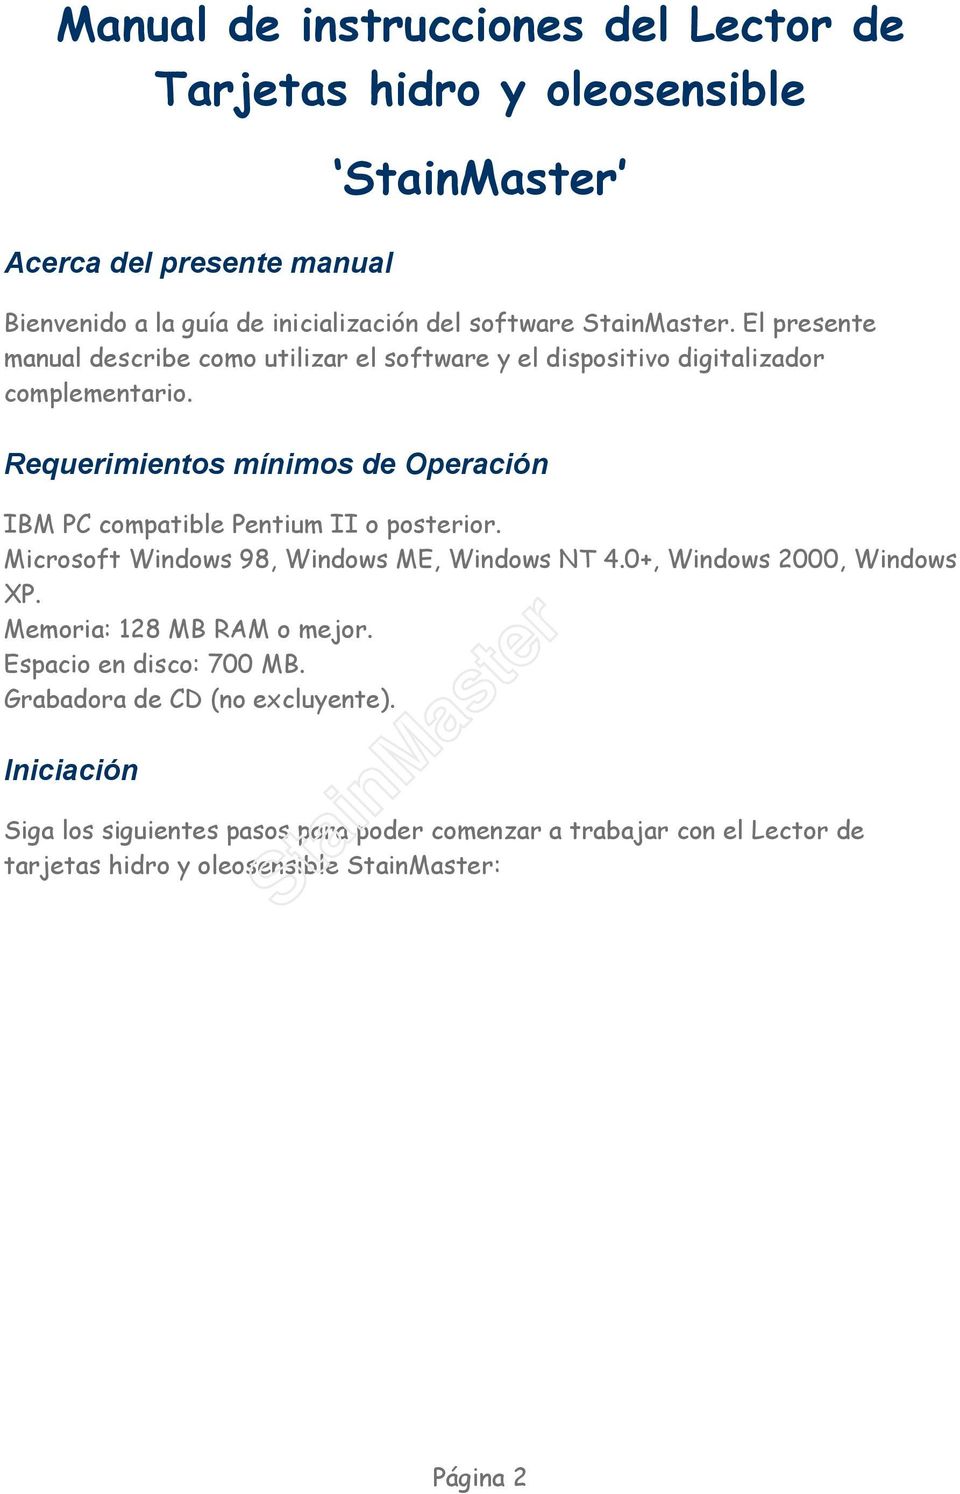 Requerimientos mínimos de Operación IBM PC compatible Pentium II o posterior. Microsoft Windows 98, Windows ME, Windows NT 4.0+, Windows 2000, Windows XP.